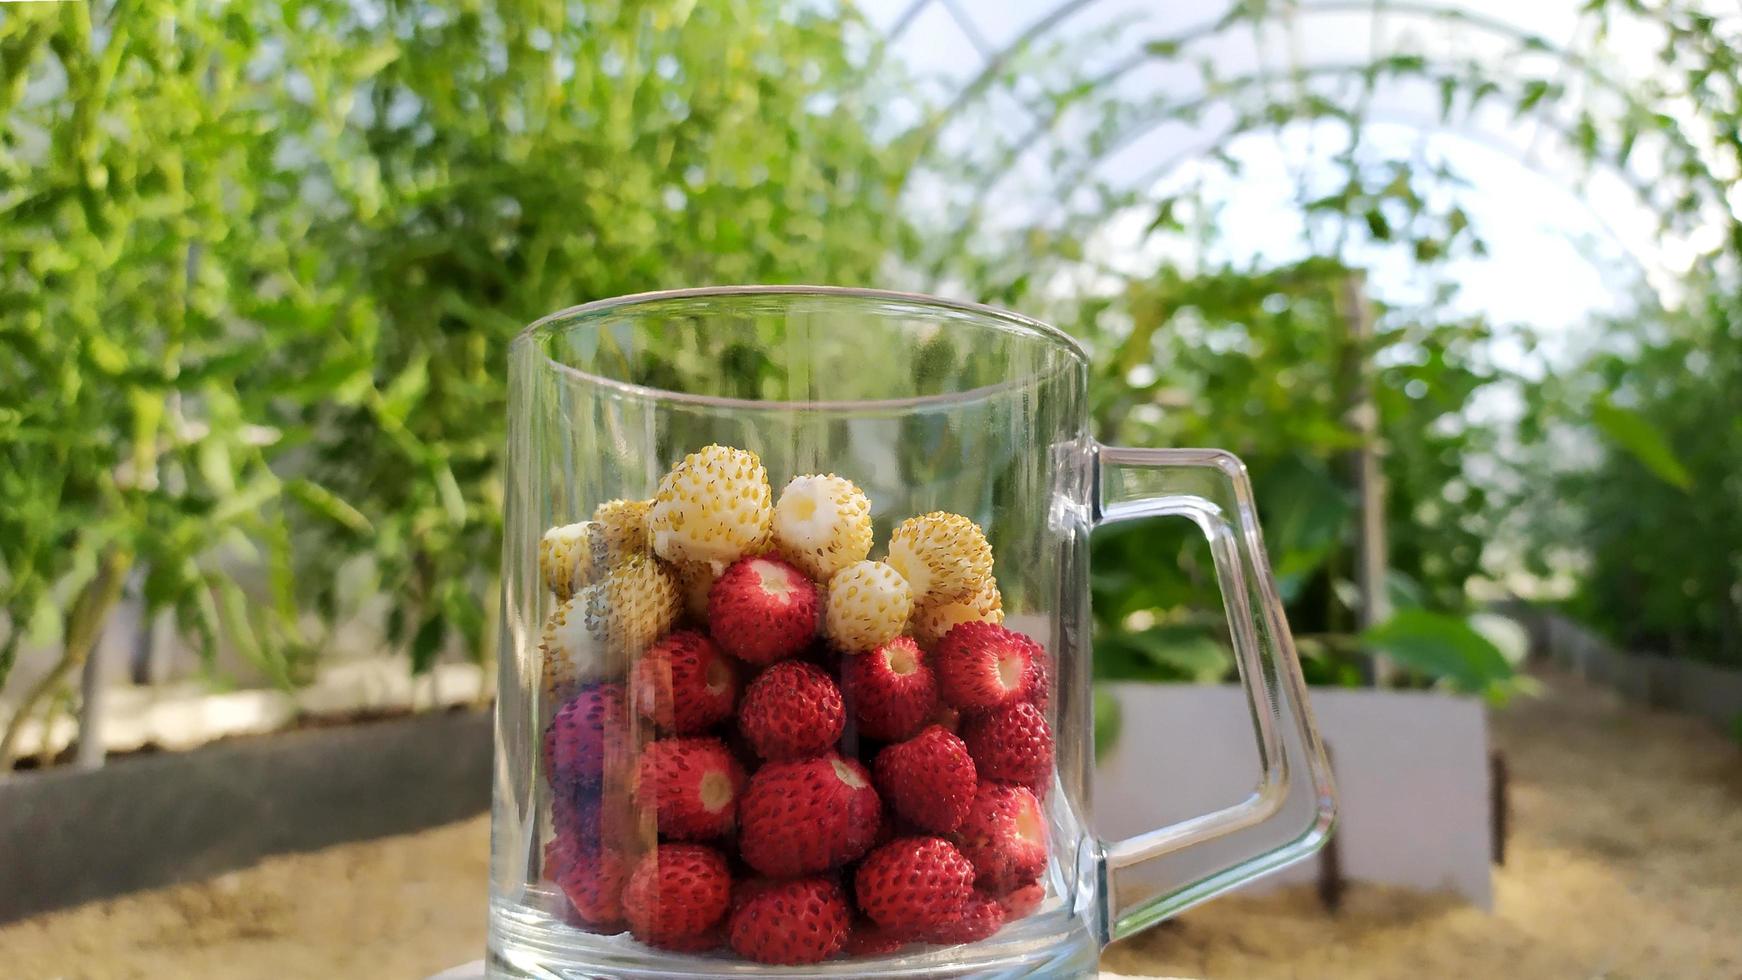 bayas de fresas blancas y rojas en una taza de vidrio foto